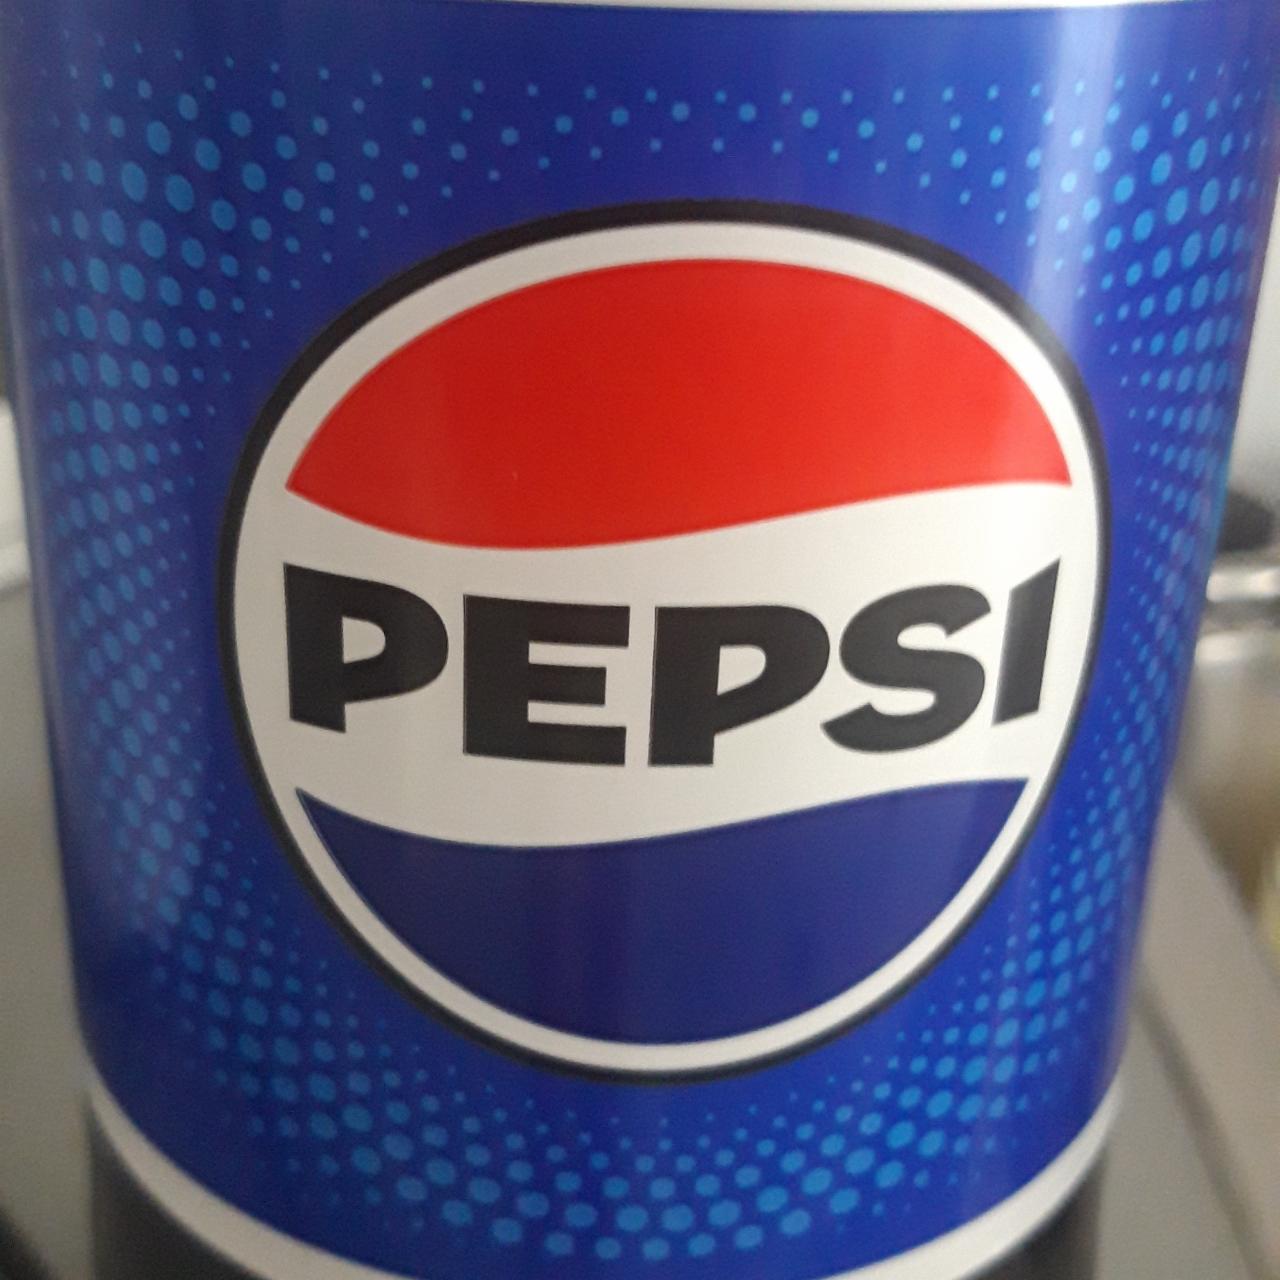 Fotografie - Pepsi